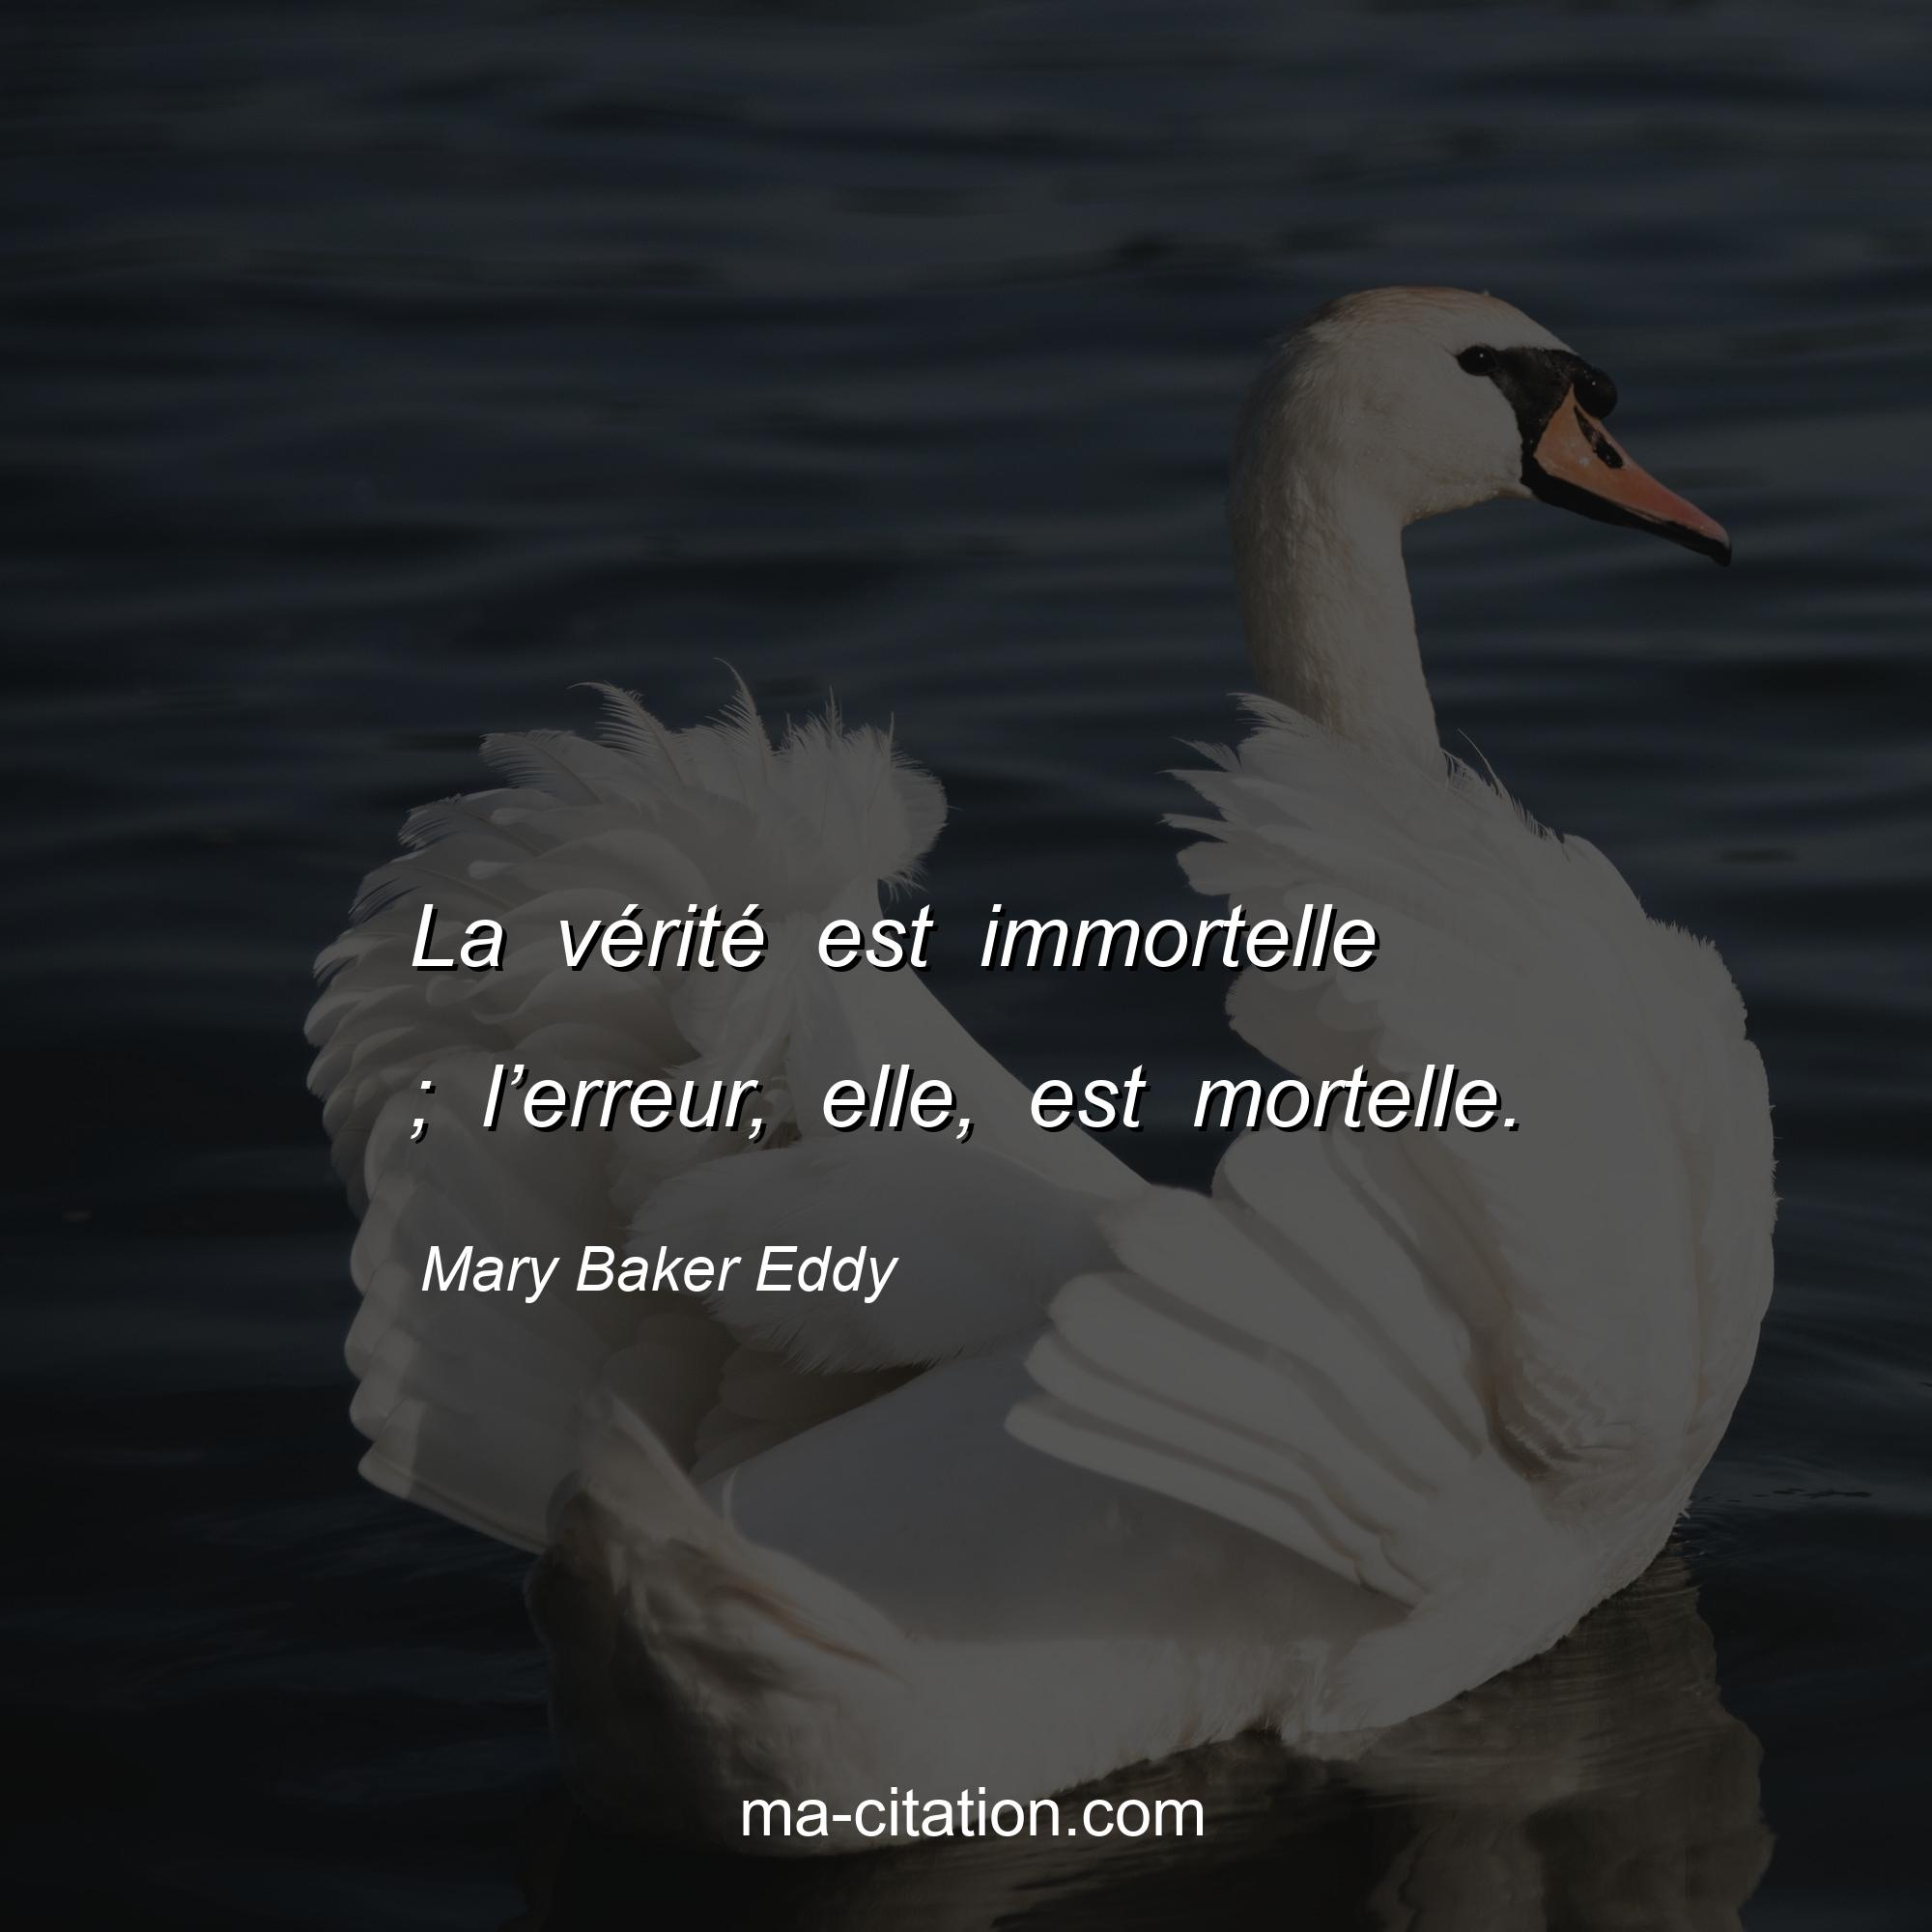 Mary Baker Eddy : La vérité est immortelle ; l’erreur, elle, est mortelle.